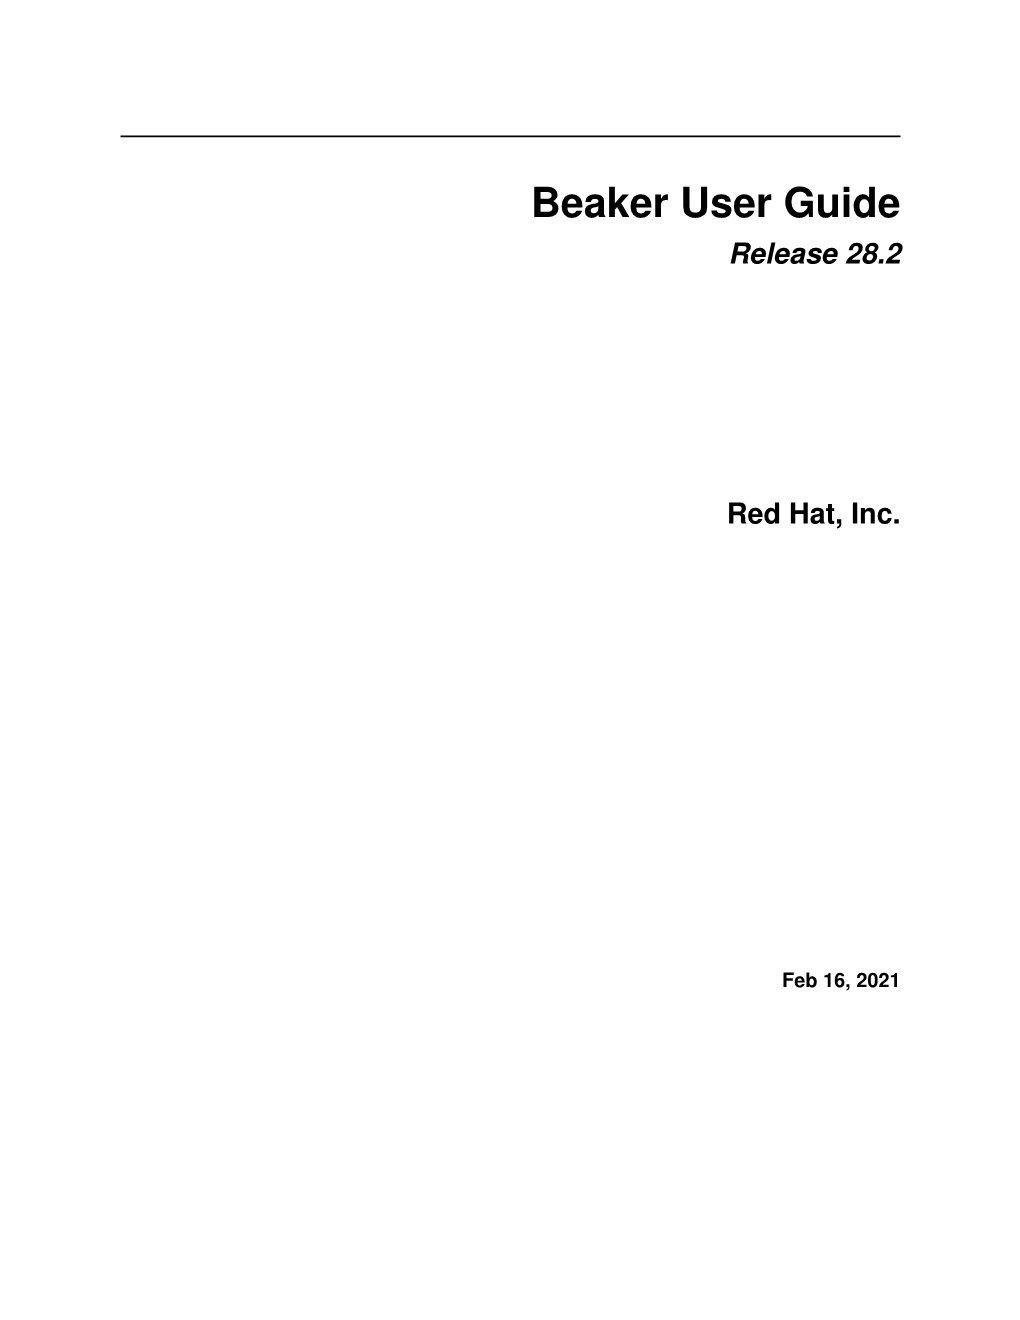 Beaker User Guide Release 28.2